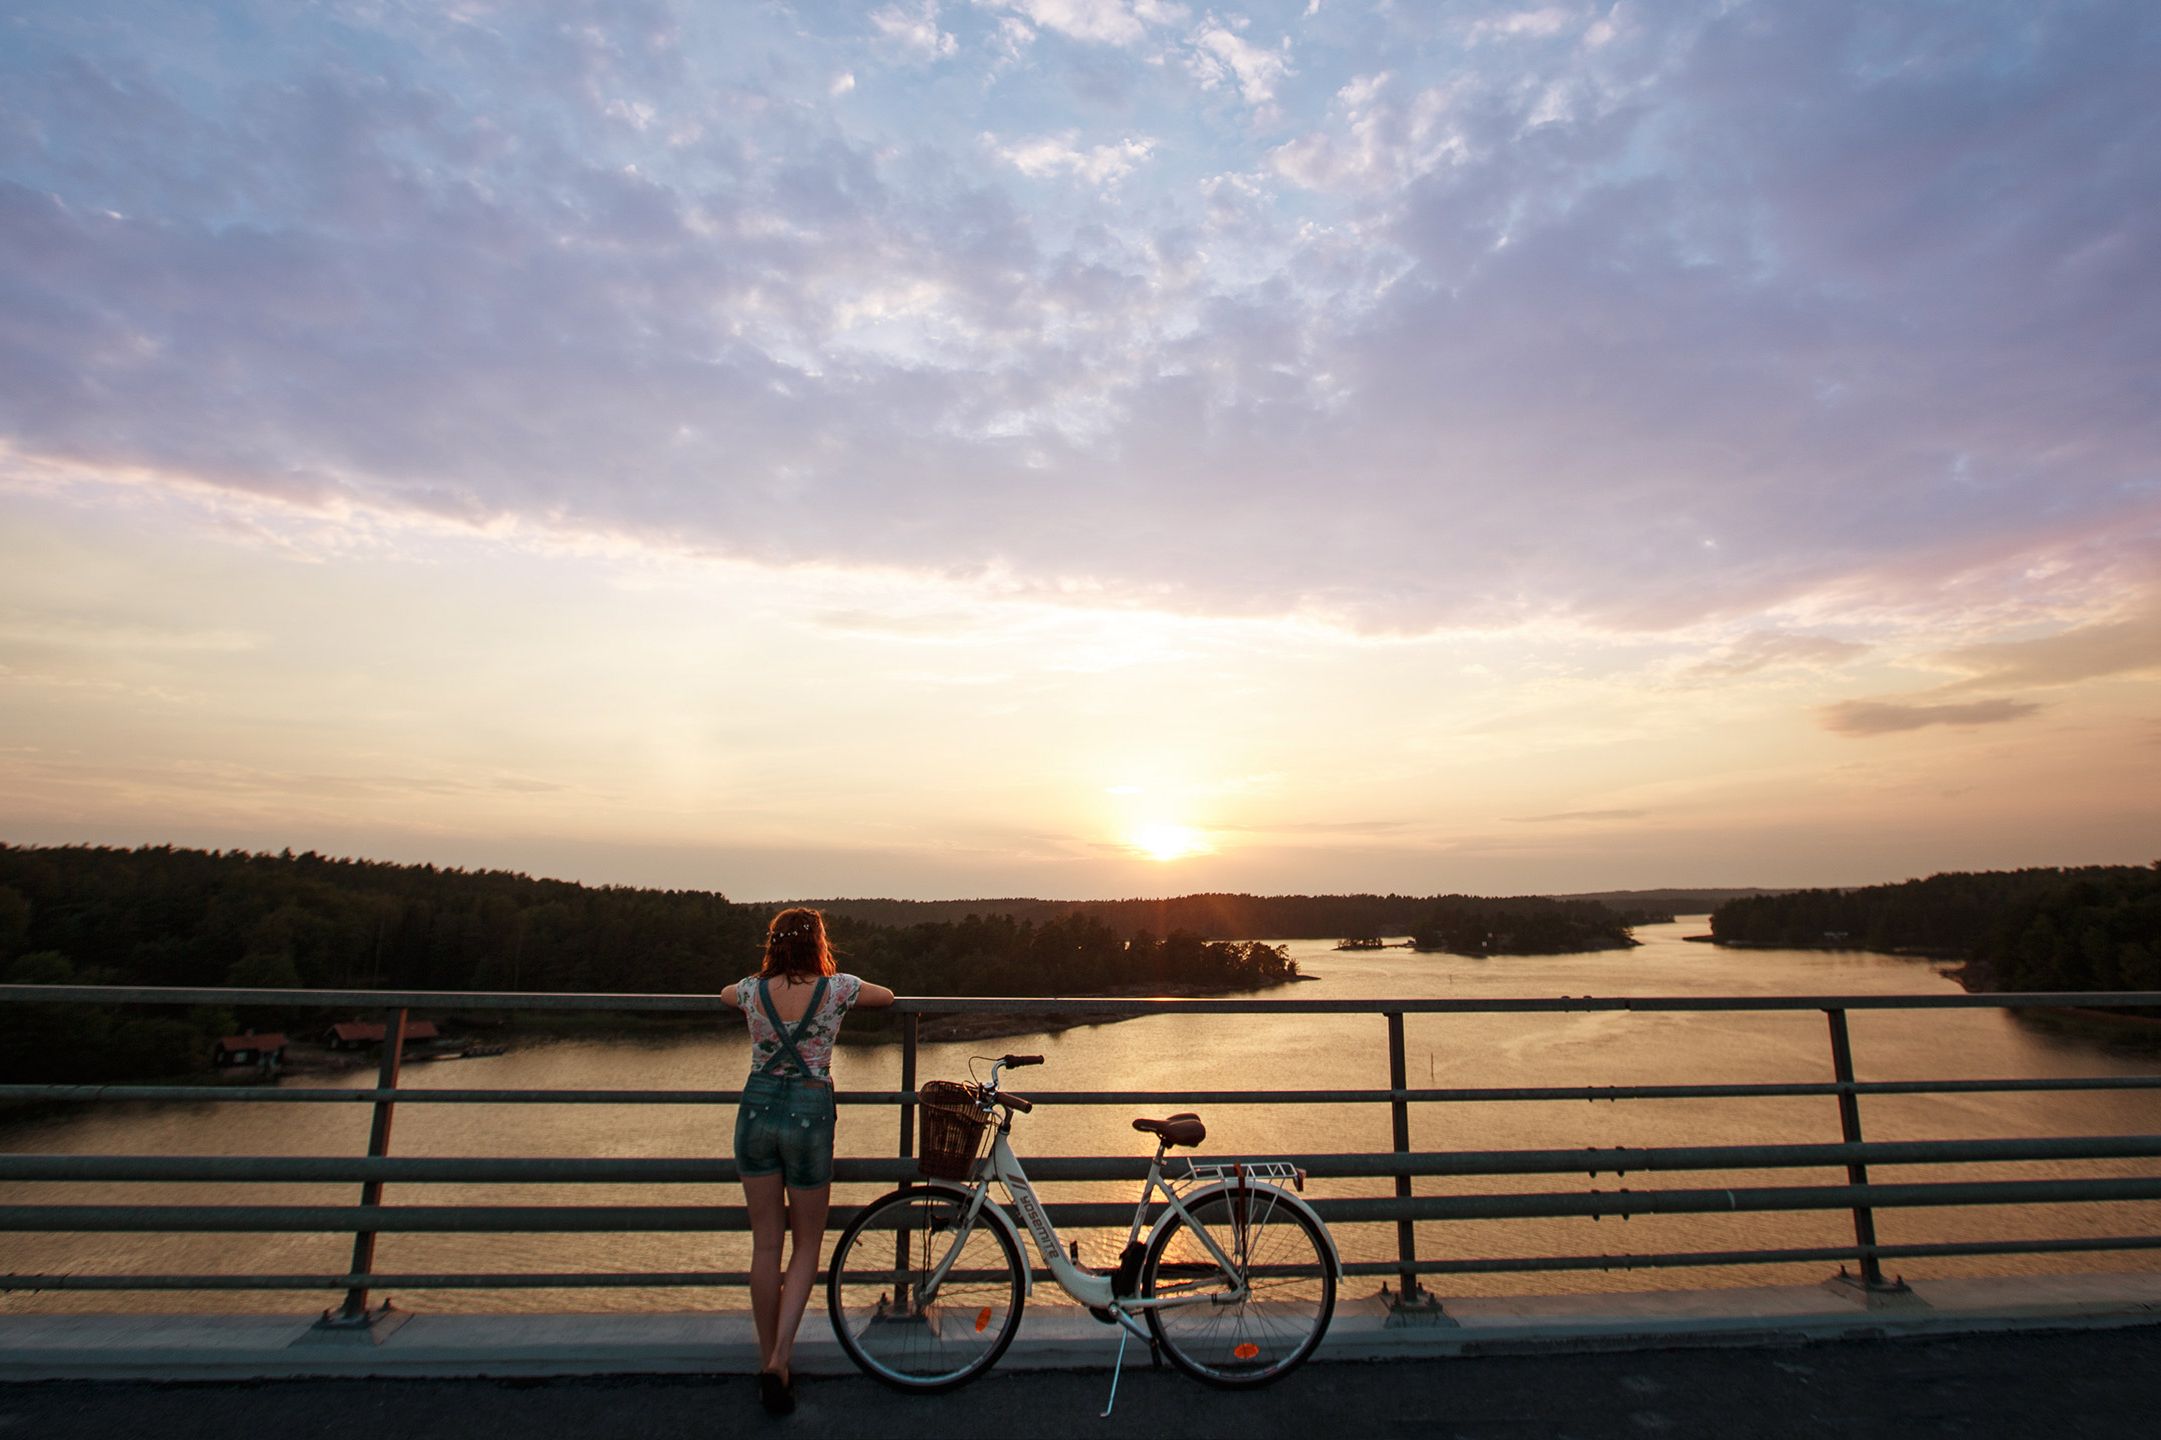 Nainen seisoo sillalla polkupyöränsä vieressä ja nojaa kaiteeseen. Hän katsoo kohti saaristoa ja auringonlaskua, joka on värjännyt meren oranssiksi.